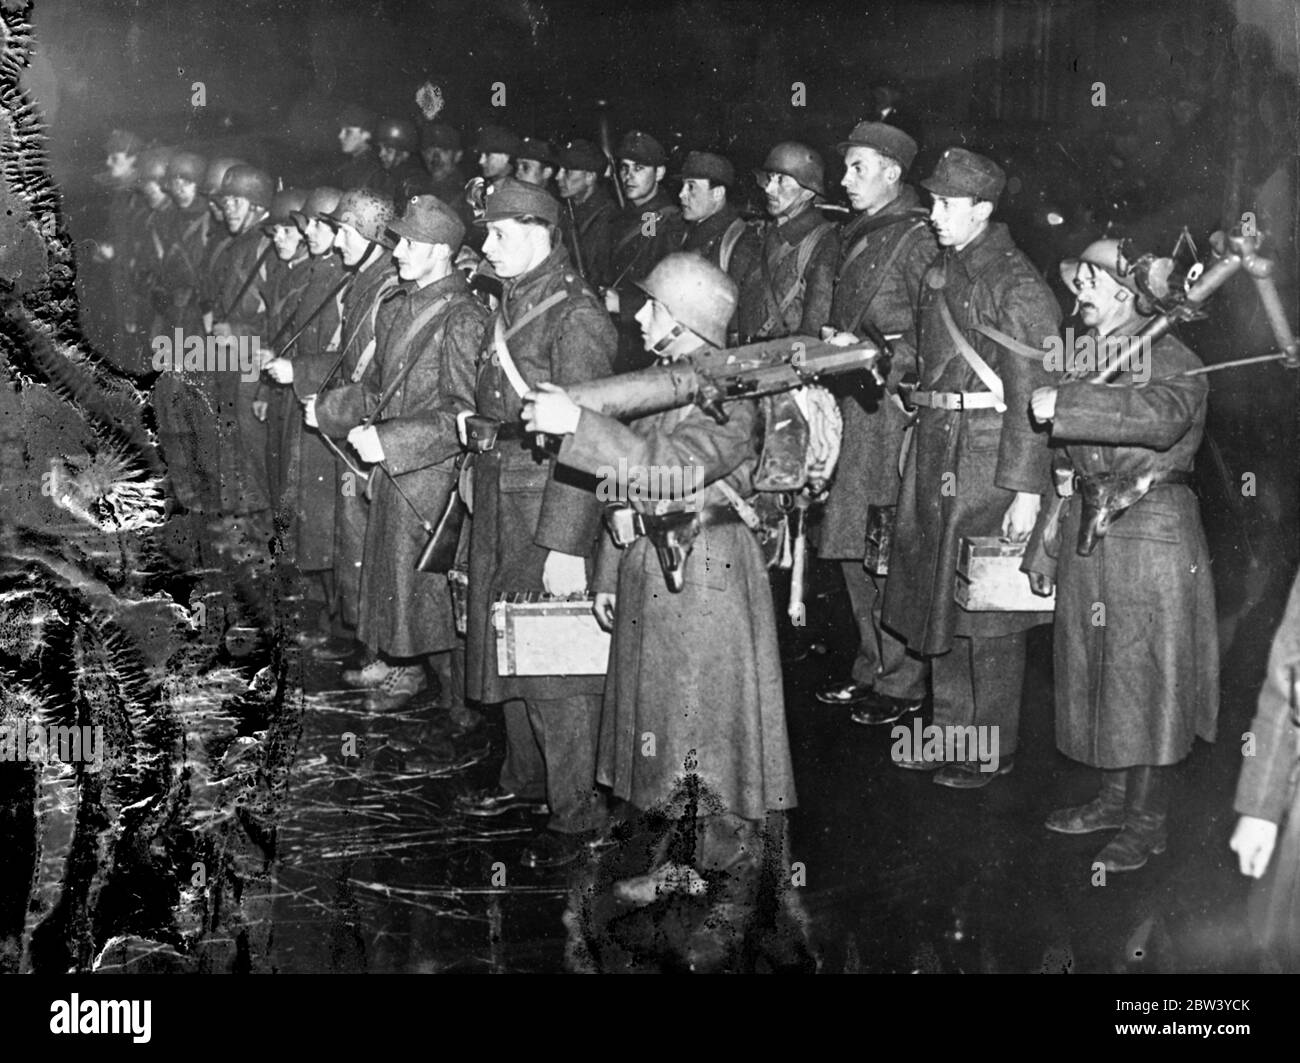 Truppe armate sono di guardia a Vienna mentre i nazisti si scontrano con i sostenitori del governo. Forti distaccamenti della Milizia del fronte della Patria armata di fucili e mitragliatrici si sono levati in guardia a Vienna come dimostranti nazisti, vagati dalla visita del Barone von Neurath, ministro degli Esteri tedesco, si sono scontrati con i sostenitori del governo del Cancelliere Schuschnigg. Foto: Un distacco della Milizia Fatherland Front sulla guardia in una strada di Vienna. 24 febbraio 1937 Foto Stock